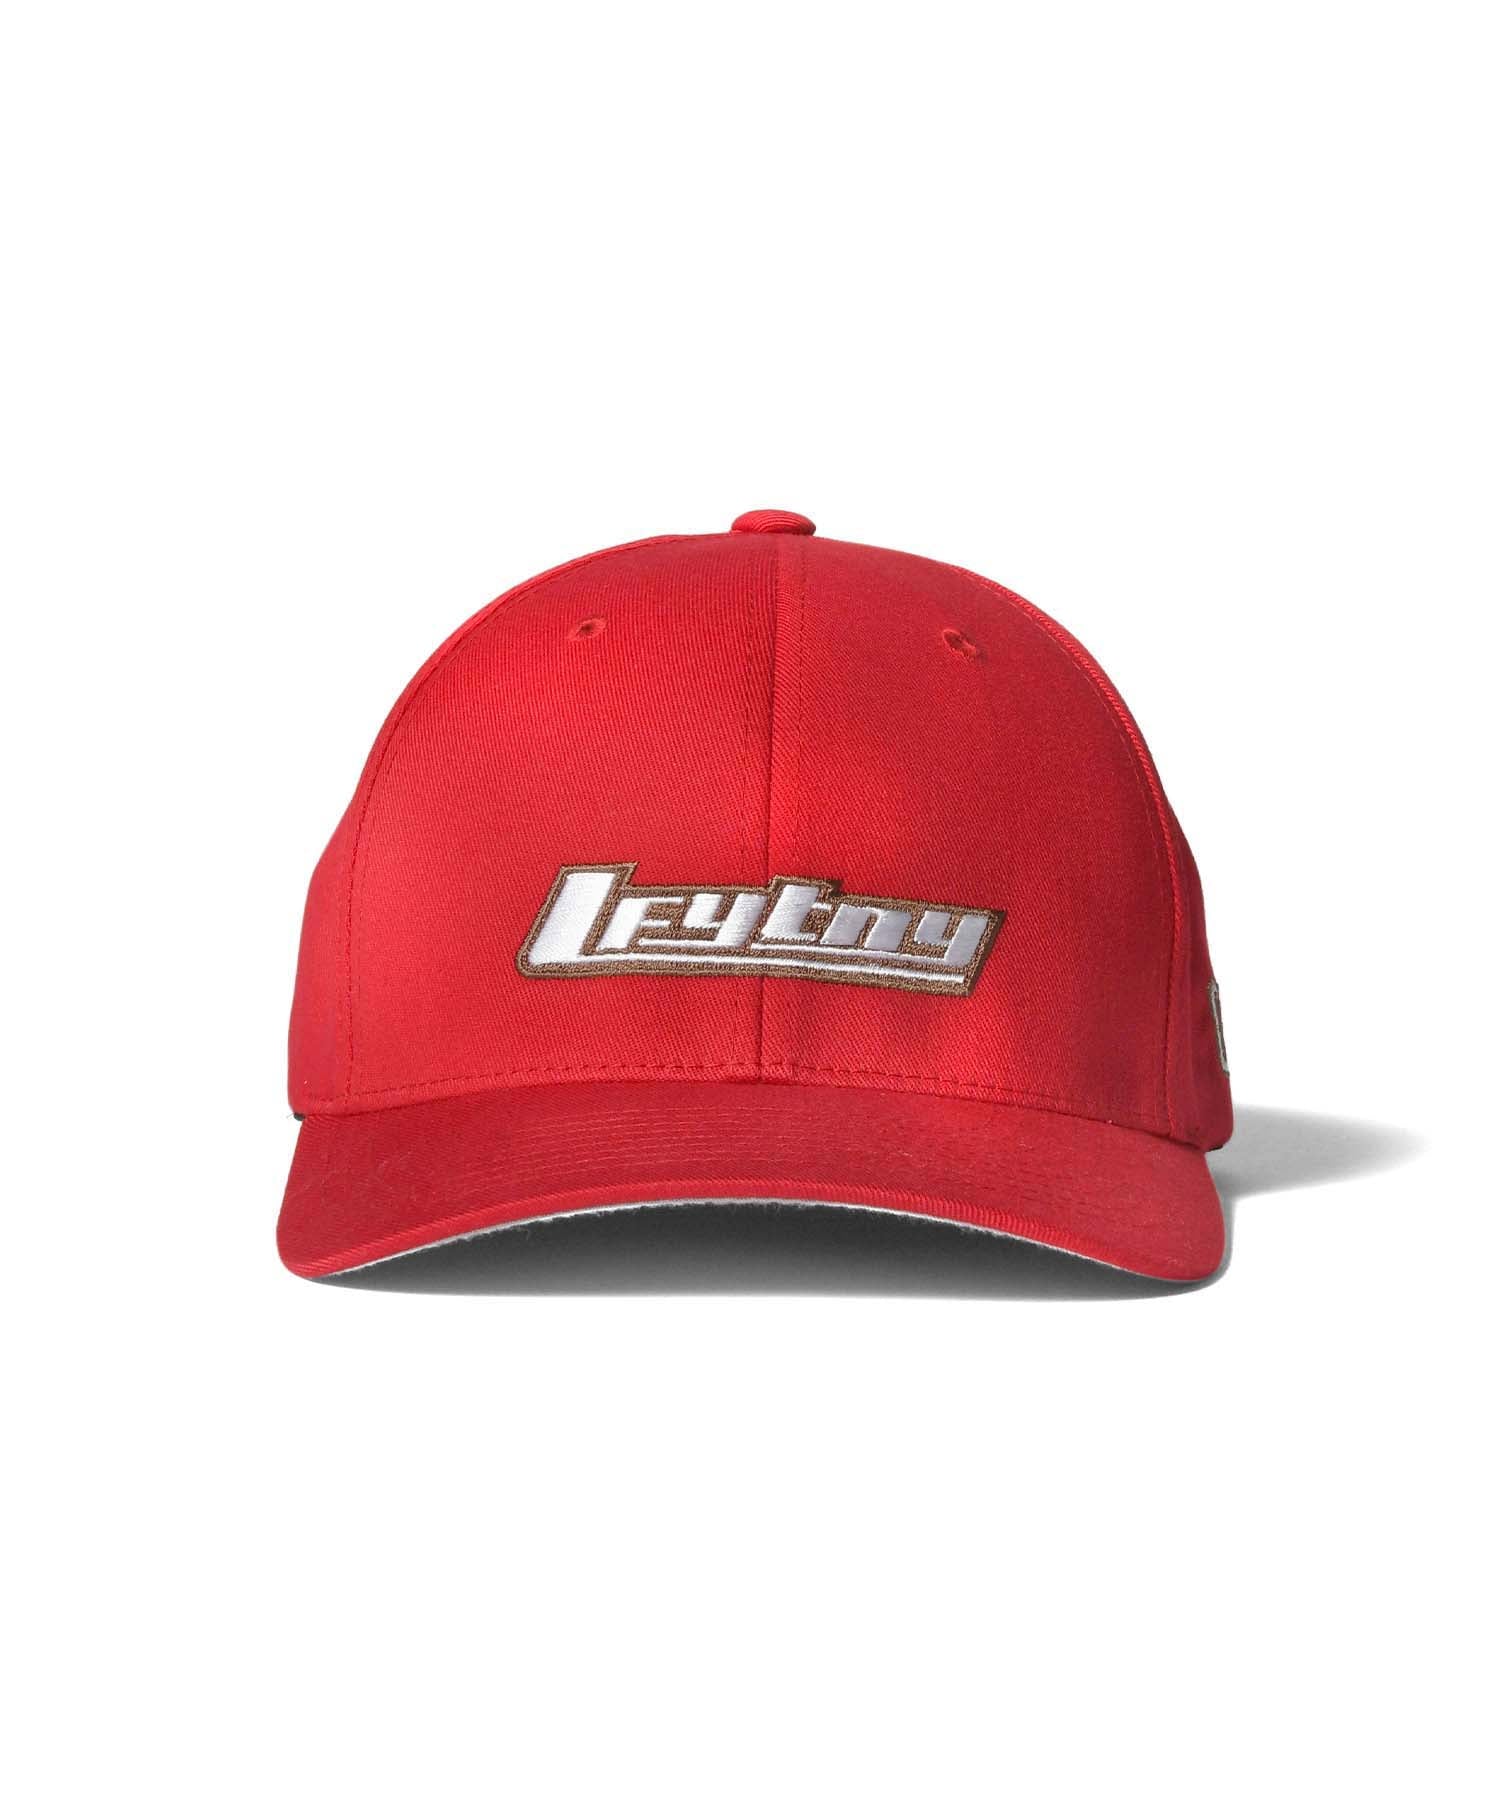 LFYTNY LOGO FLEXFIT CAP LS221407 RED